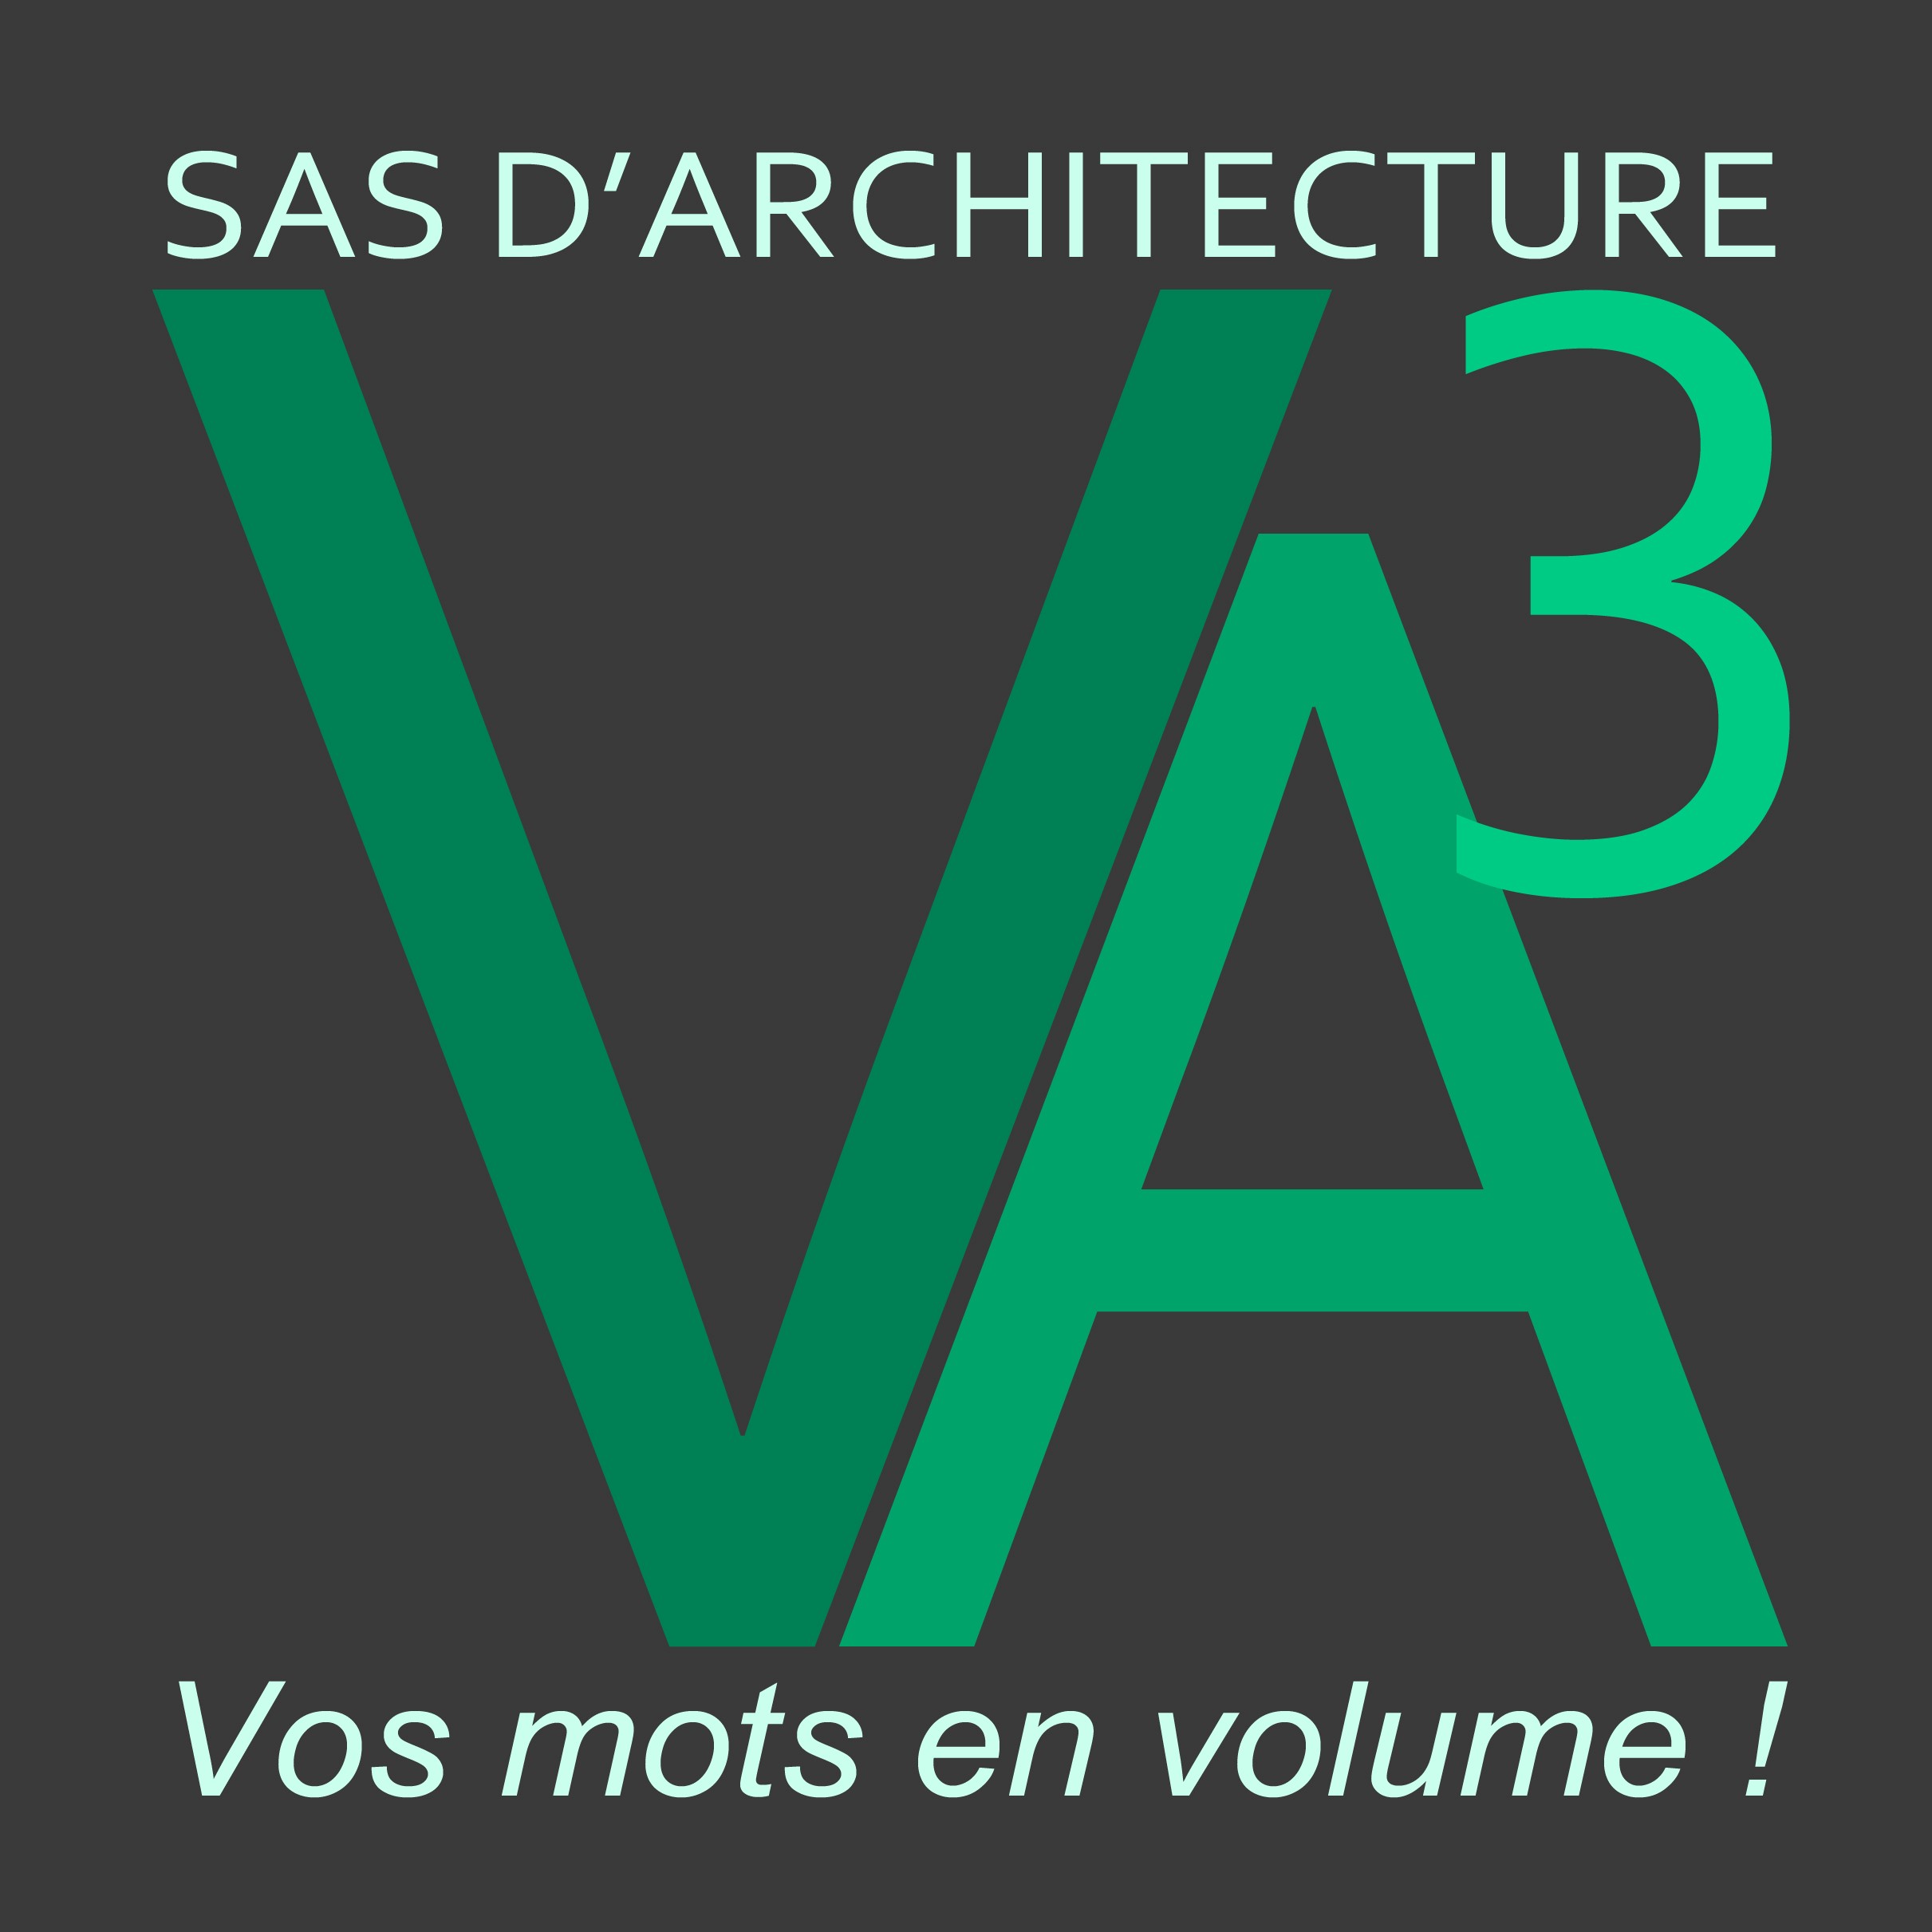 architecture va3.jpg